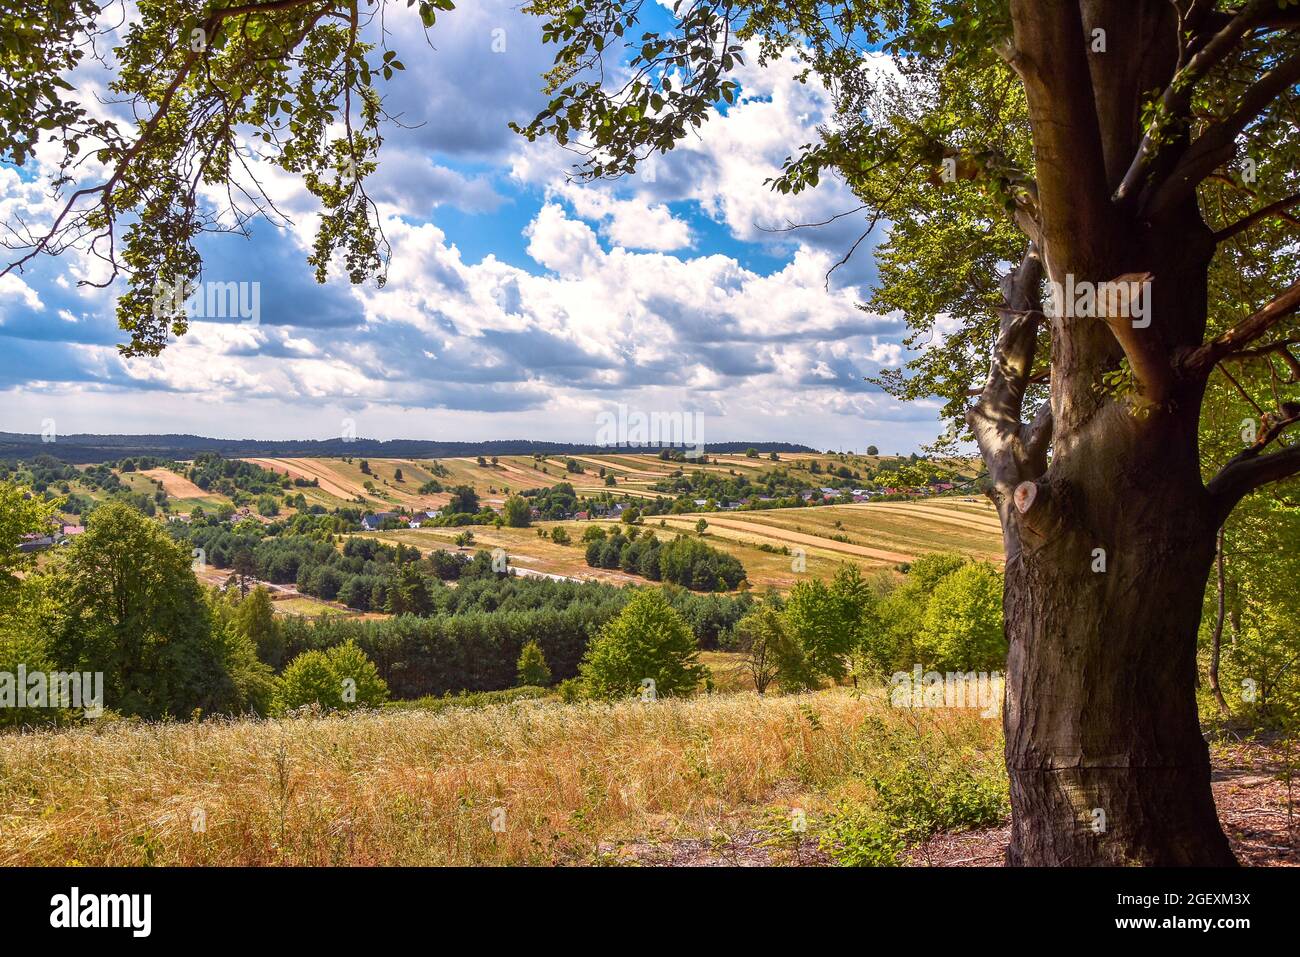 Blick auf ein traditionelles, polnisches Dorf, das im Sommer zwischen Hügeln liegt. Felder mit Weizen und anderen Körnern in der Zeit der Ernte überwuchert. Groß, Stockfoto